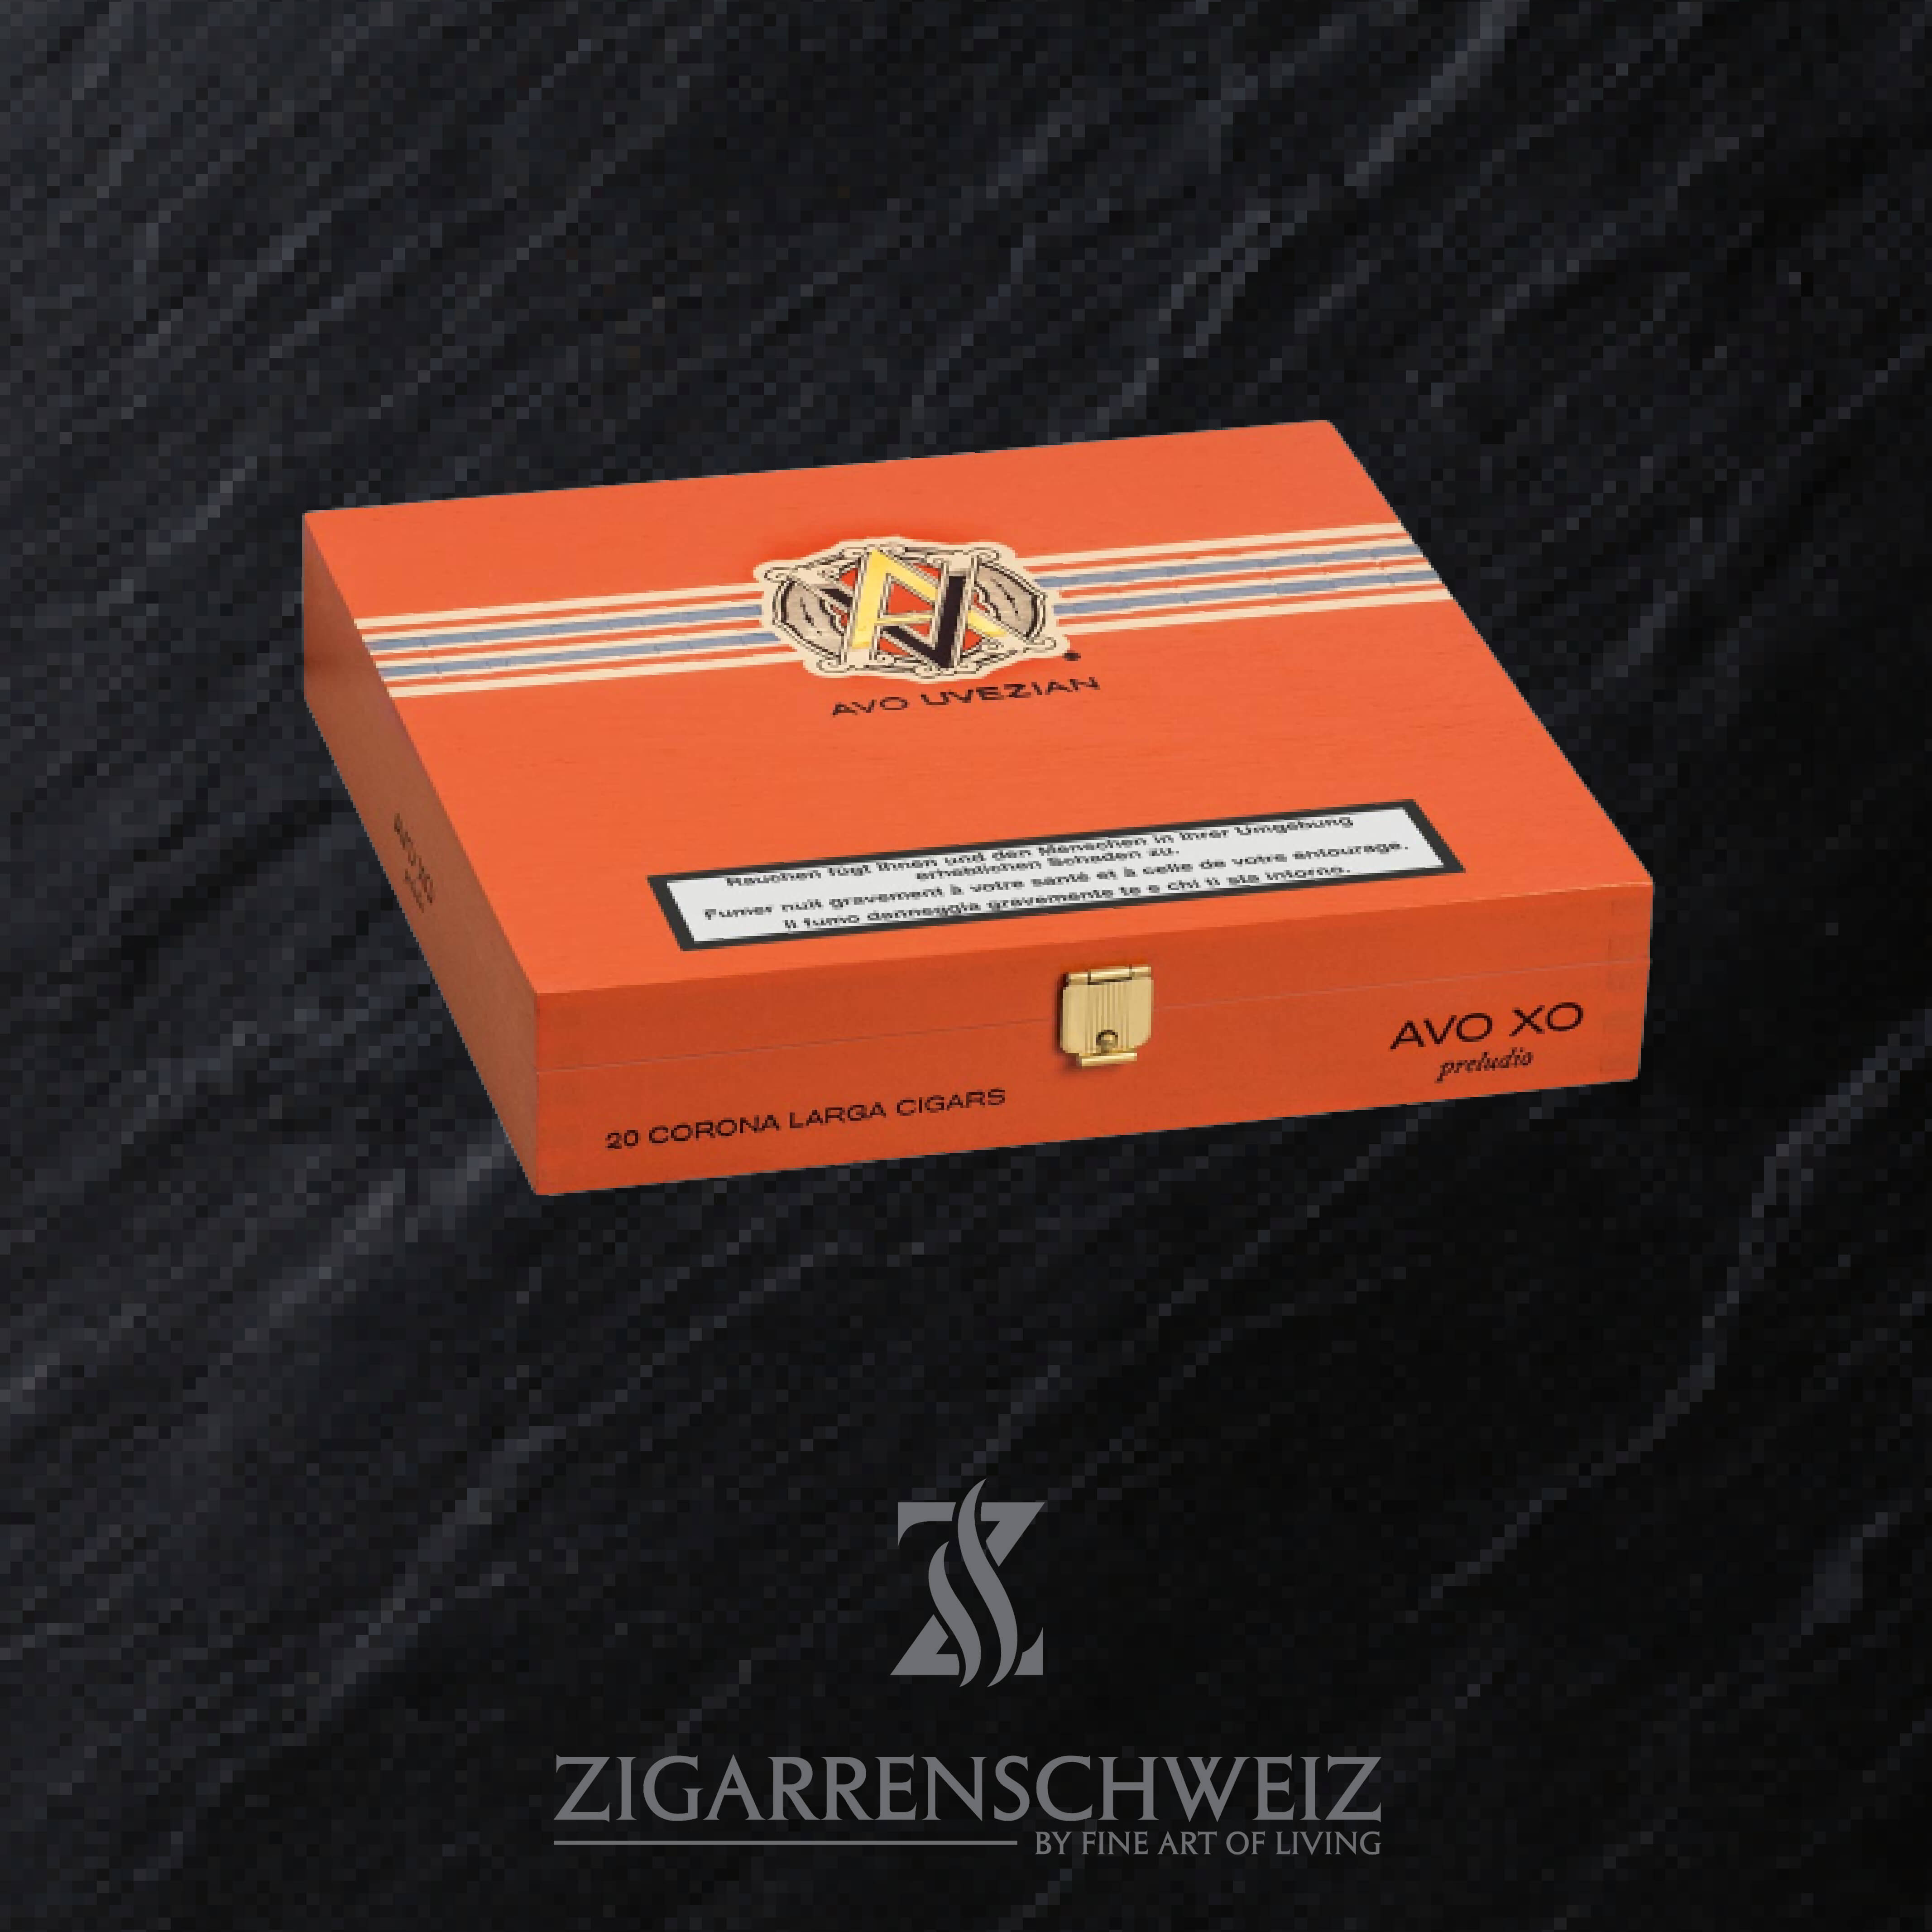 AVO XO Preludio (Corona Larga) Zigarren Kiste geschlossen